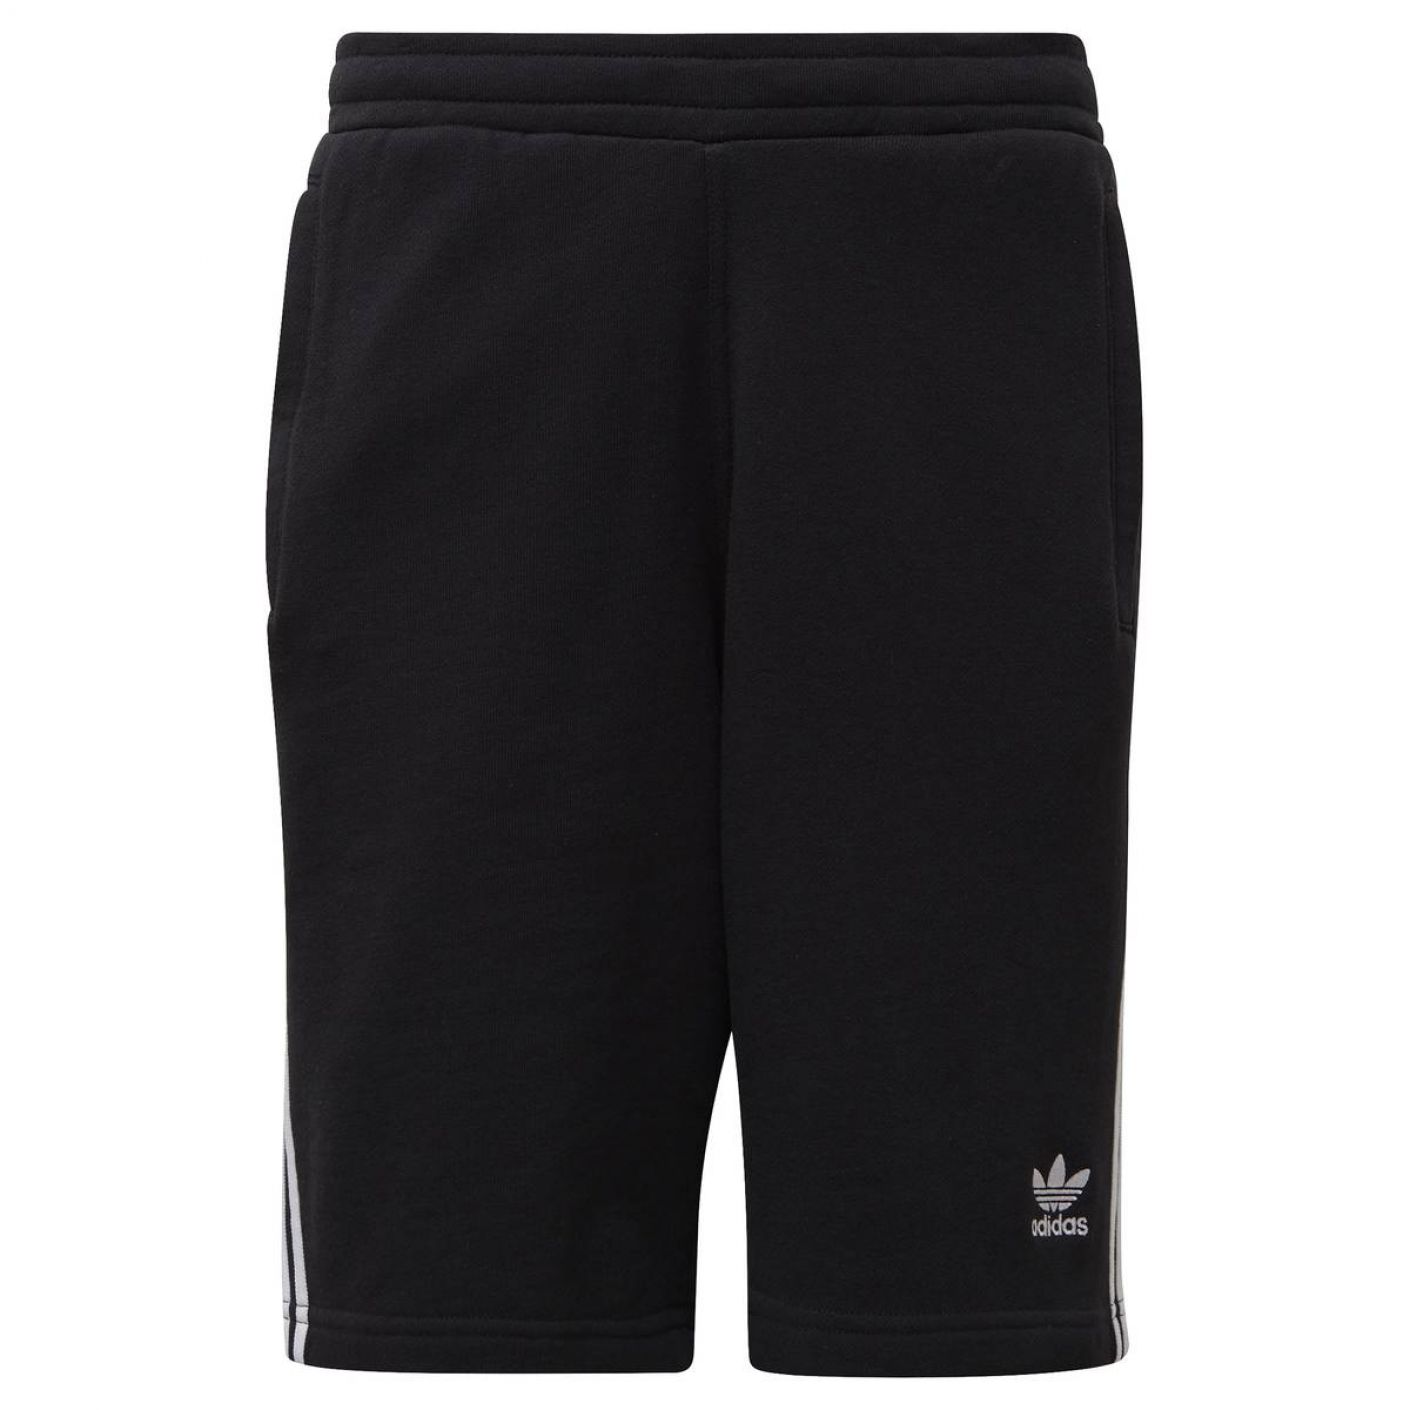 Adidas 3-Stripe Short Black for Men